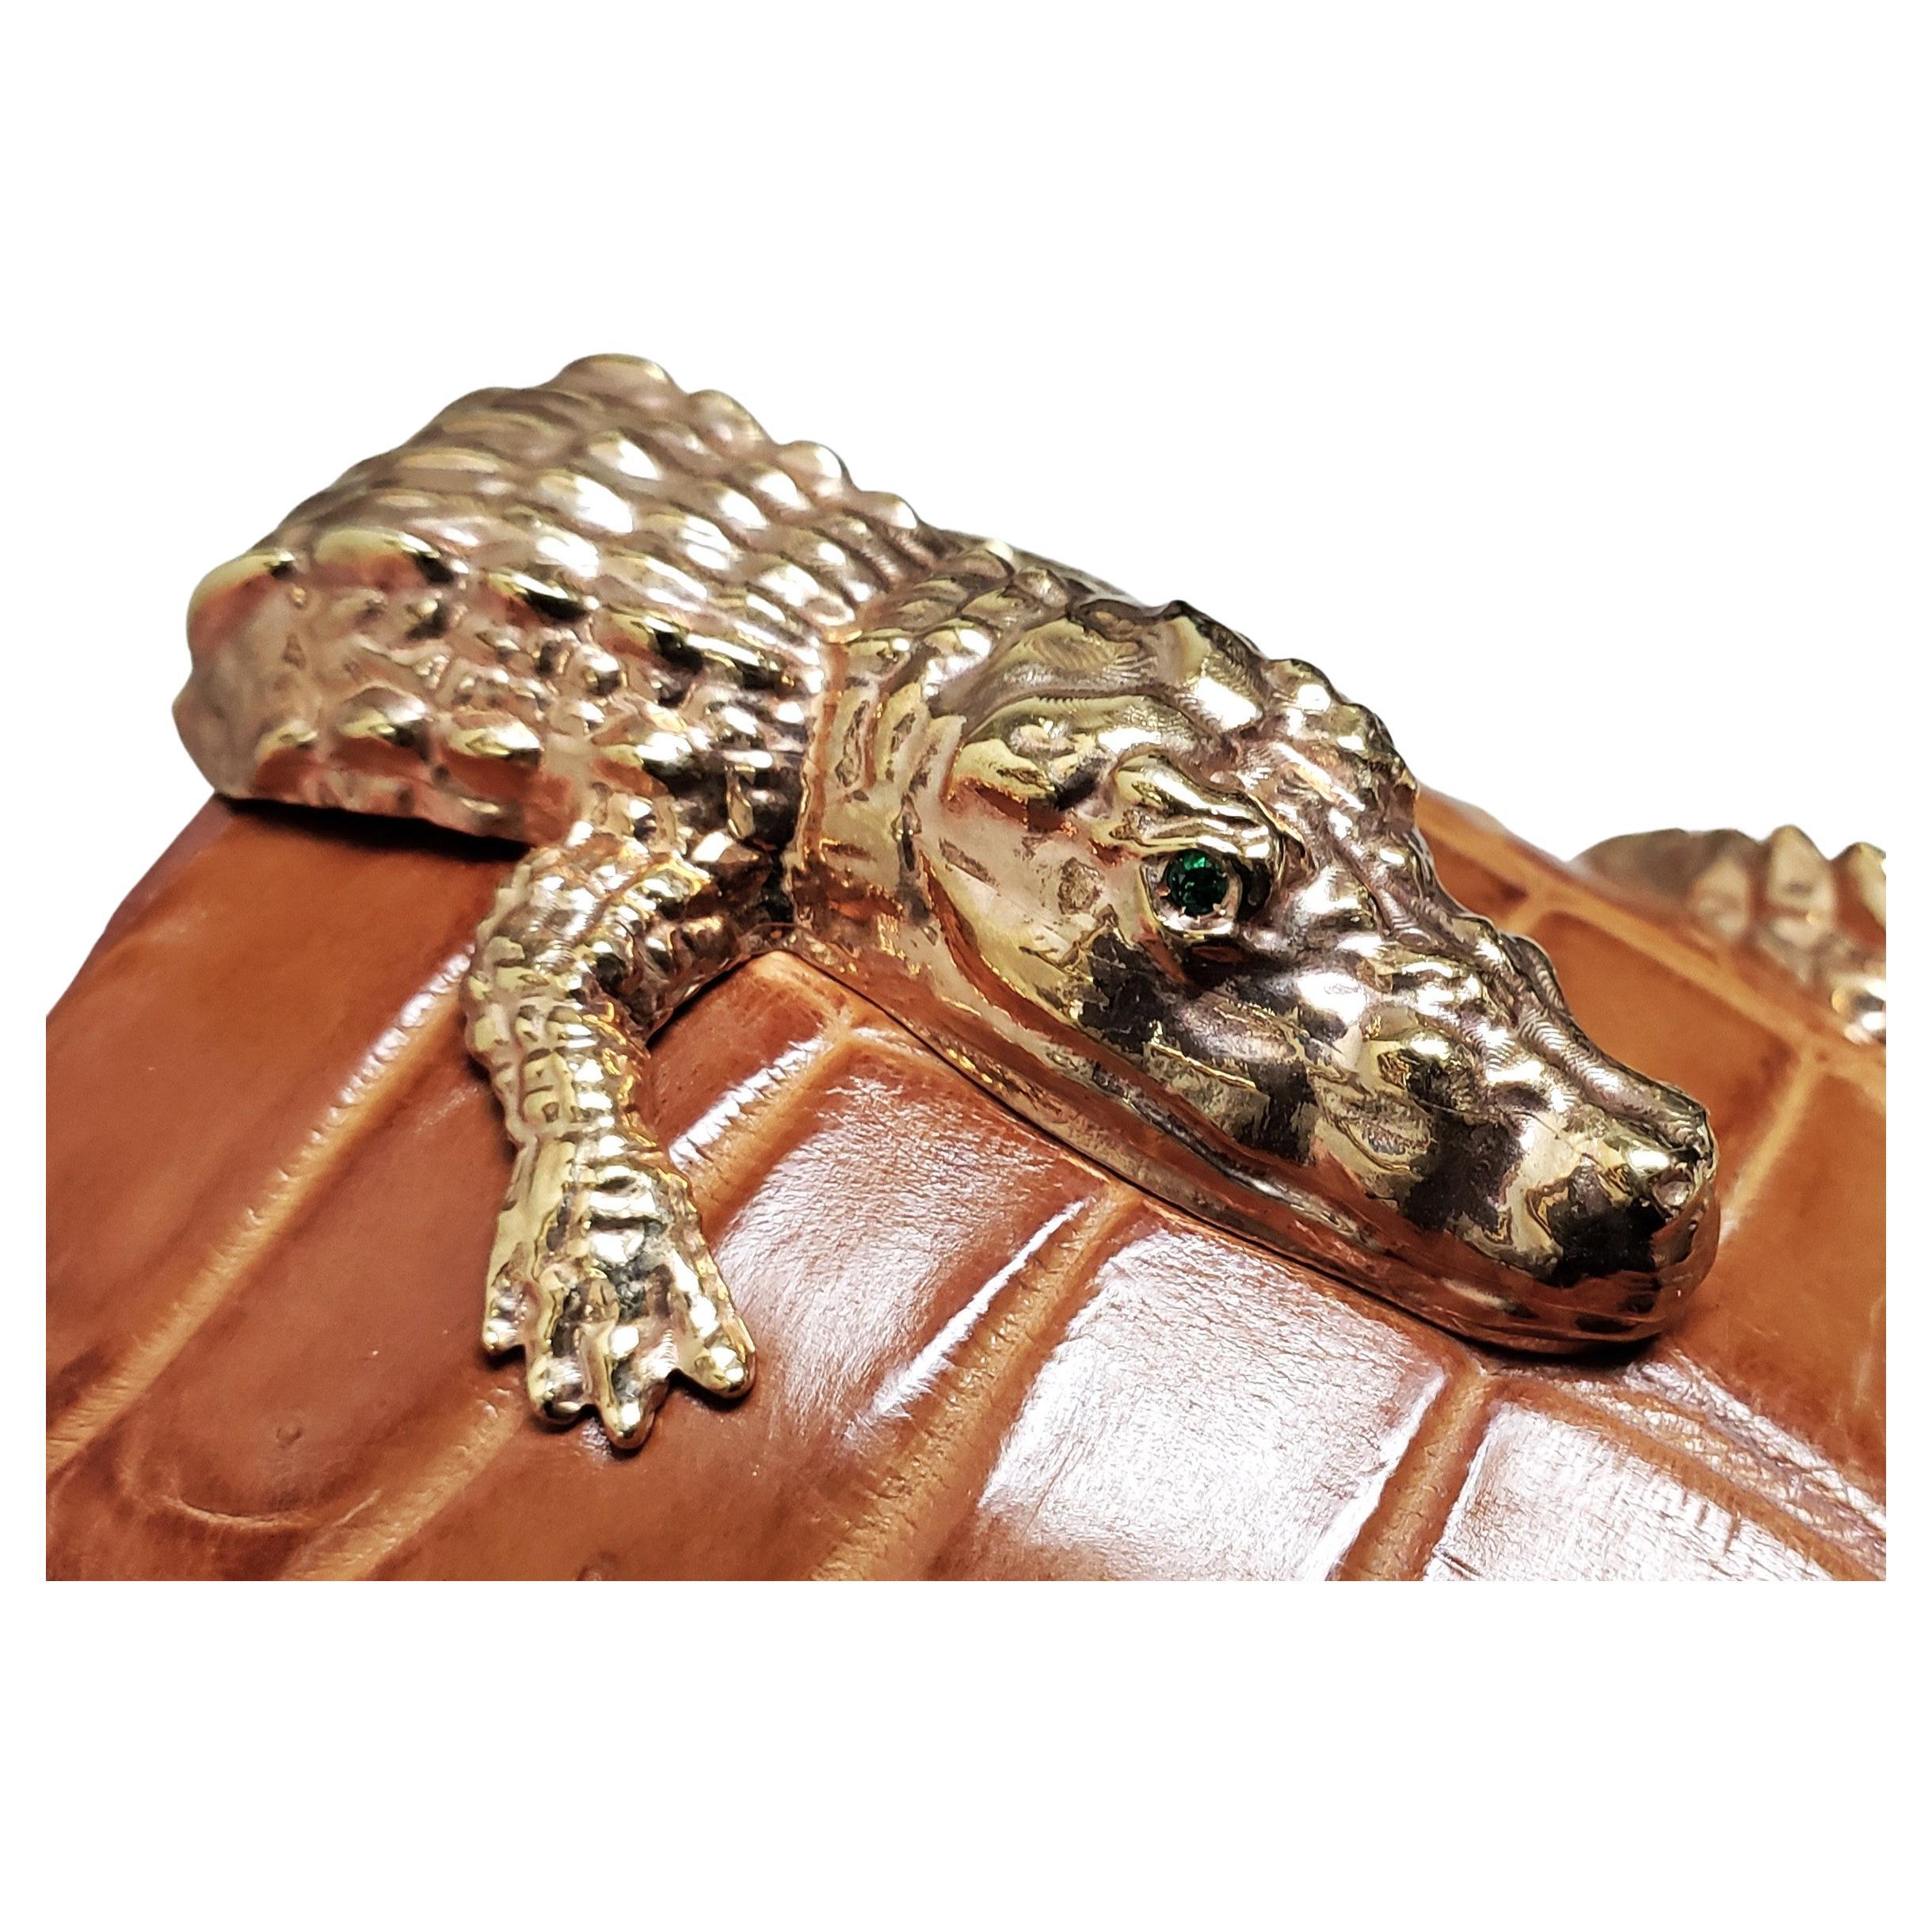 SABBADINI Italy 18K Rose Gold Alligator cuff bracelet 3.25" wide For Sale